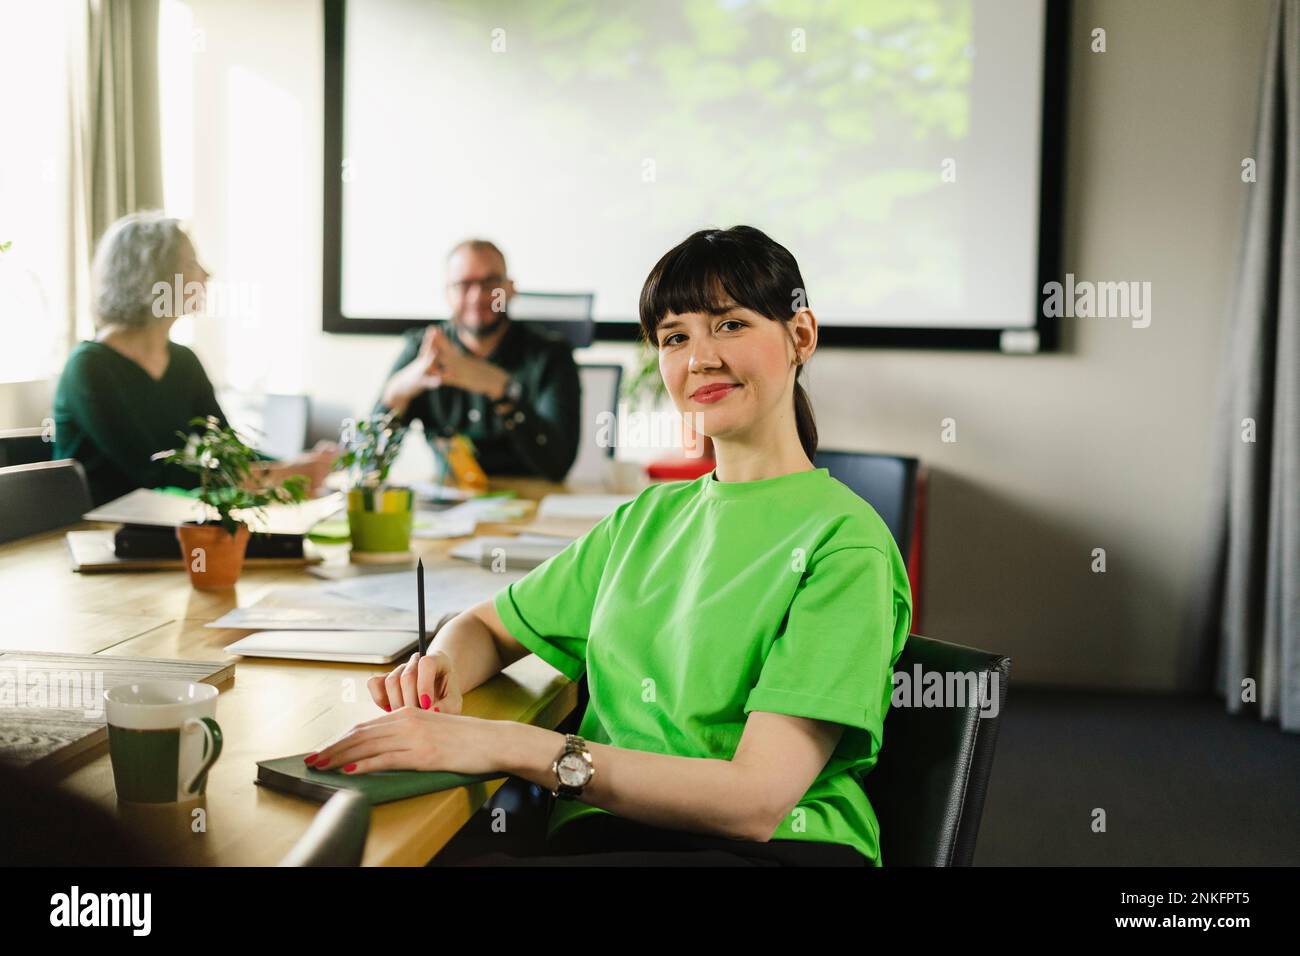 Retrato de mujer con camiseta verde durante una reunión en la sala de conferencias Foto de stock